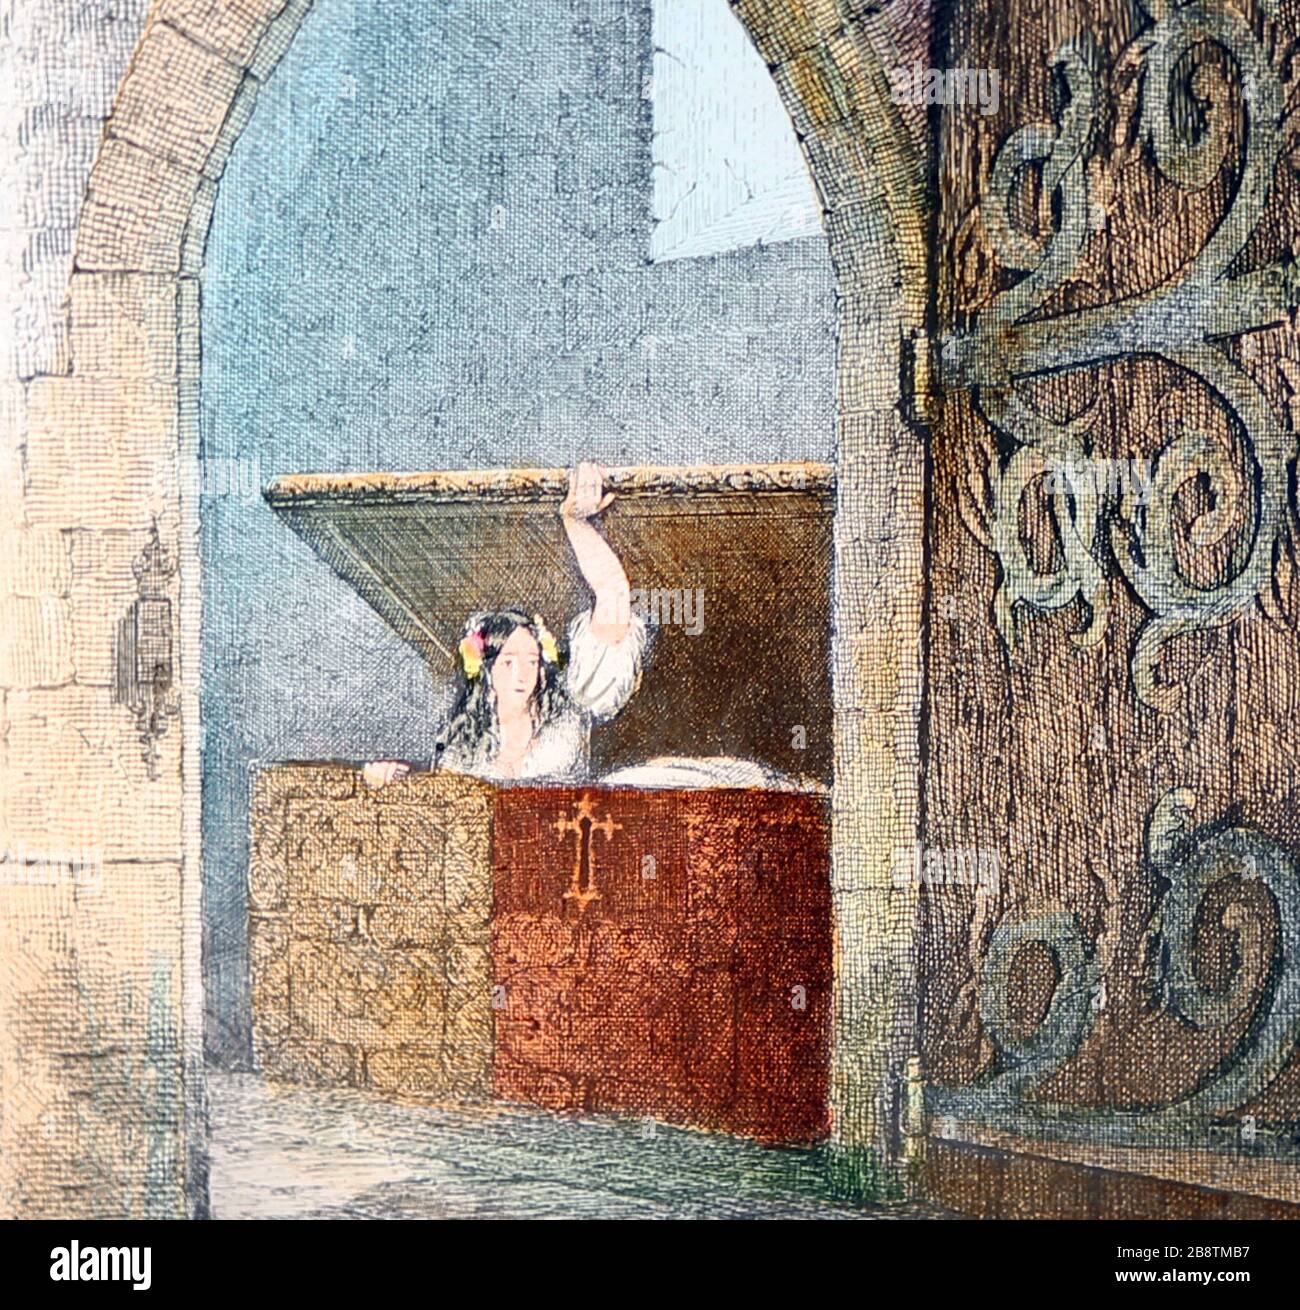 Un'illustrazione vittoriana dalla storia 'The Mistletoe Bough'. Questa è l'immagine numero 4 'si nasconde nella vecchia cassa di quercia'. Ci sono sette immagini in totale, tutte su Alamy. Foto Stock